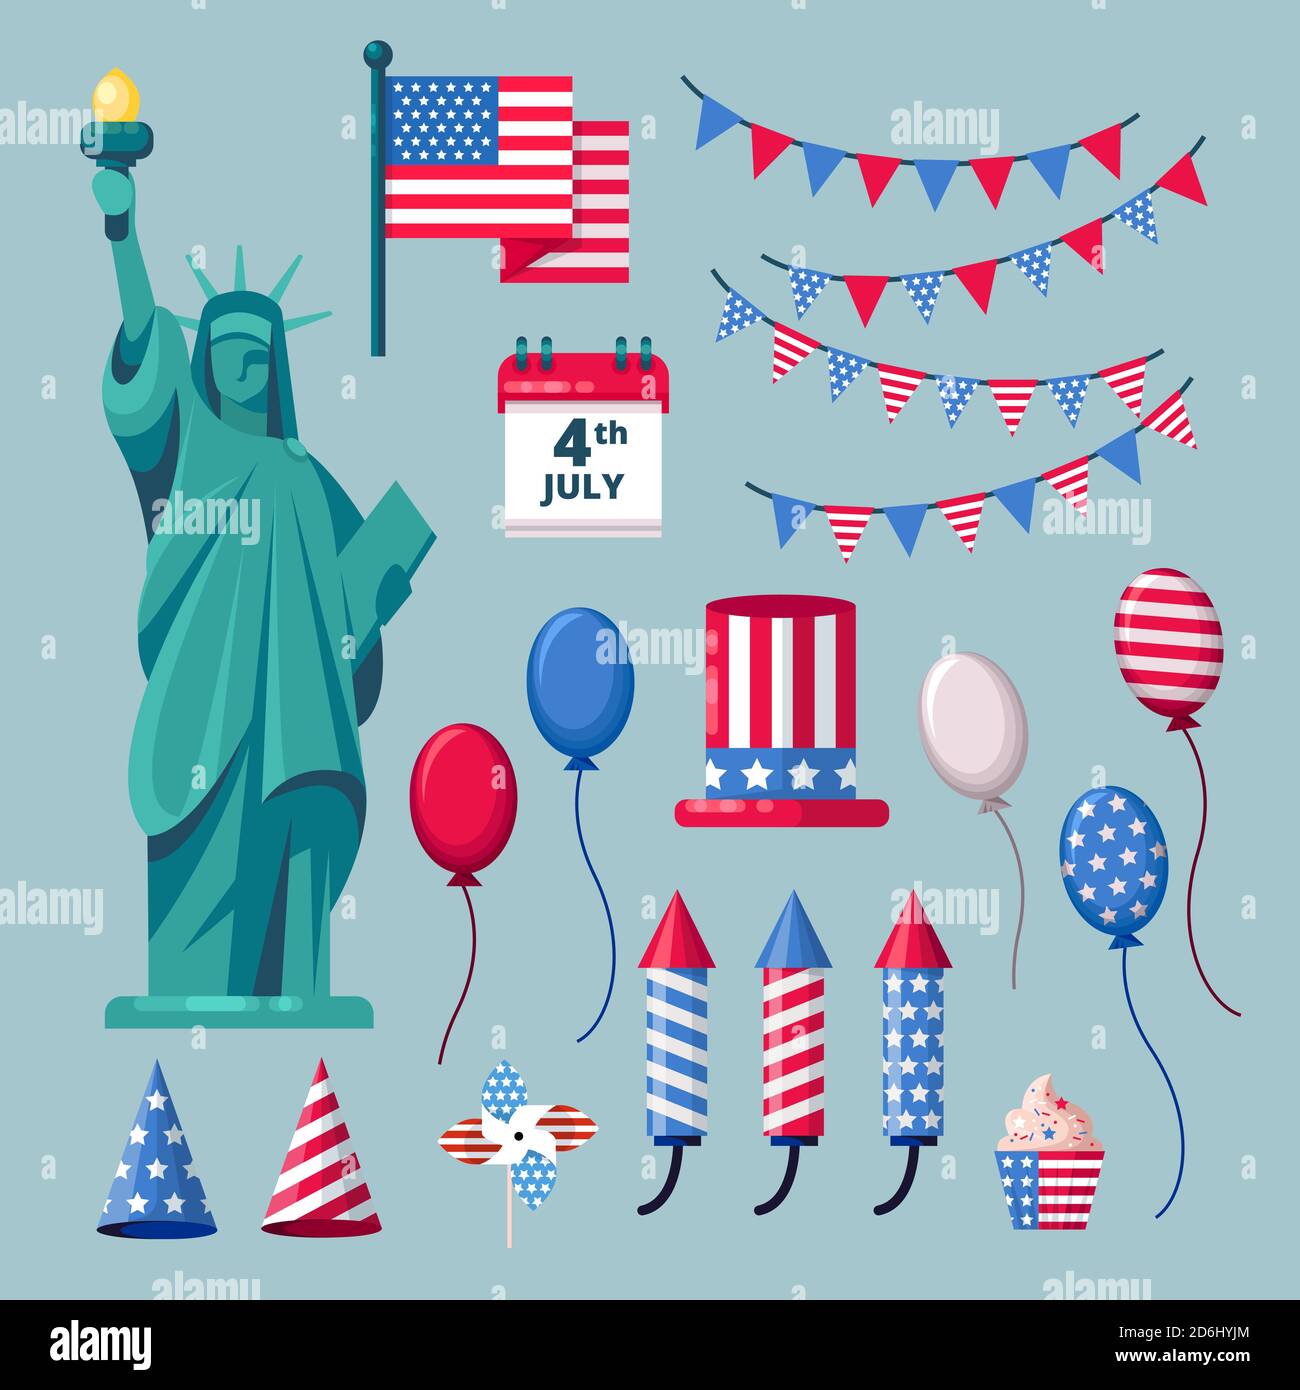 USA Urlaub Ikonen und Design-Elemente für 4 Juli Independence Day Feier. Vektorgrafik. Stock Vektor